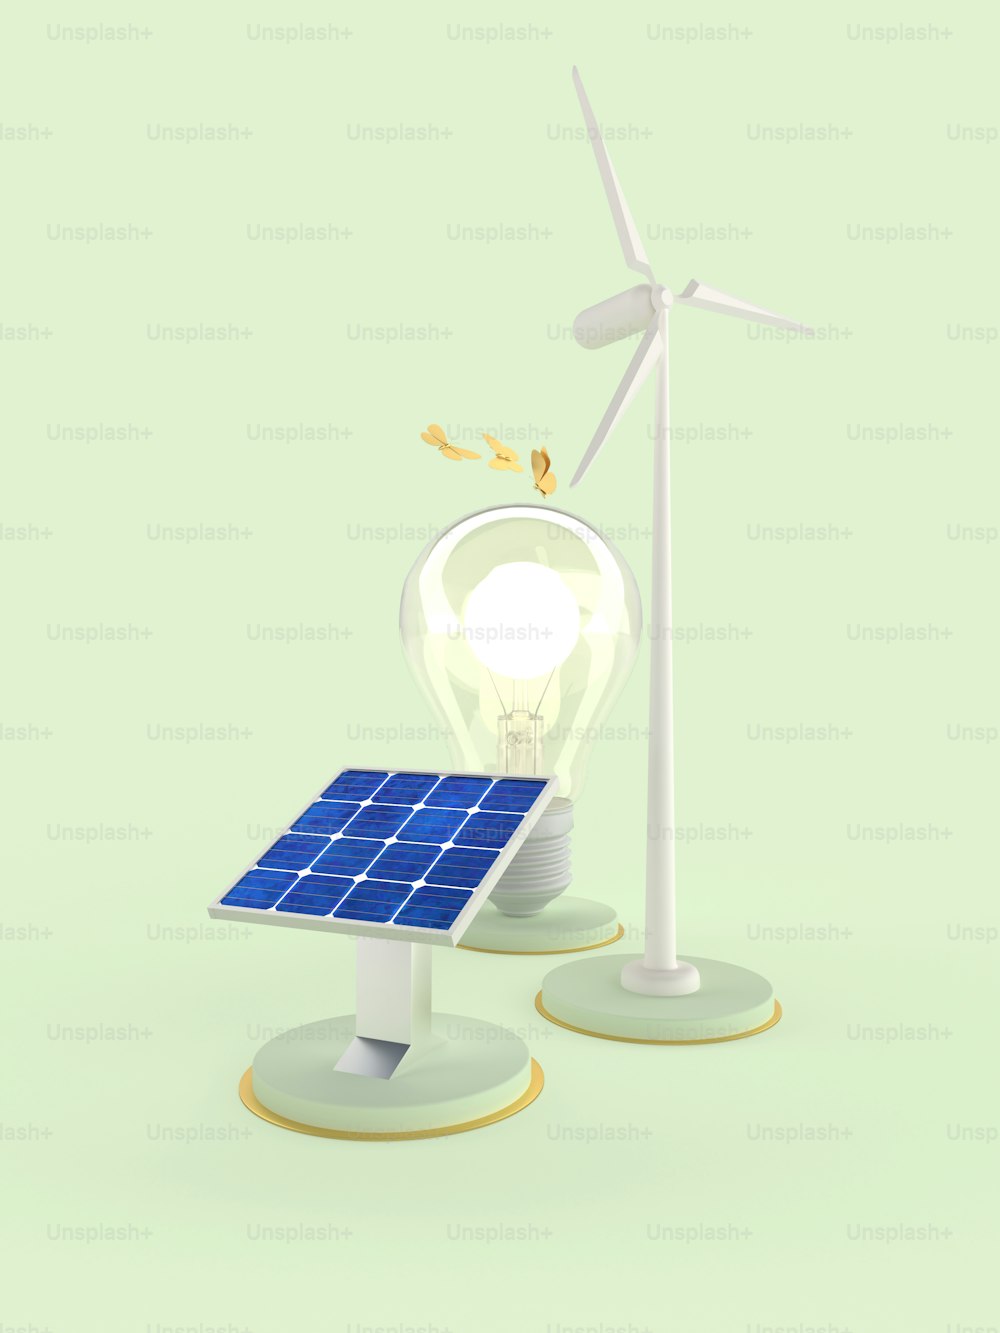 um painel solar e uma turbina eólica em um fundo verde